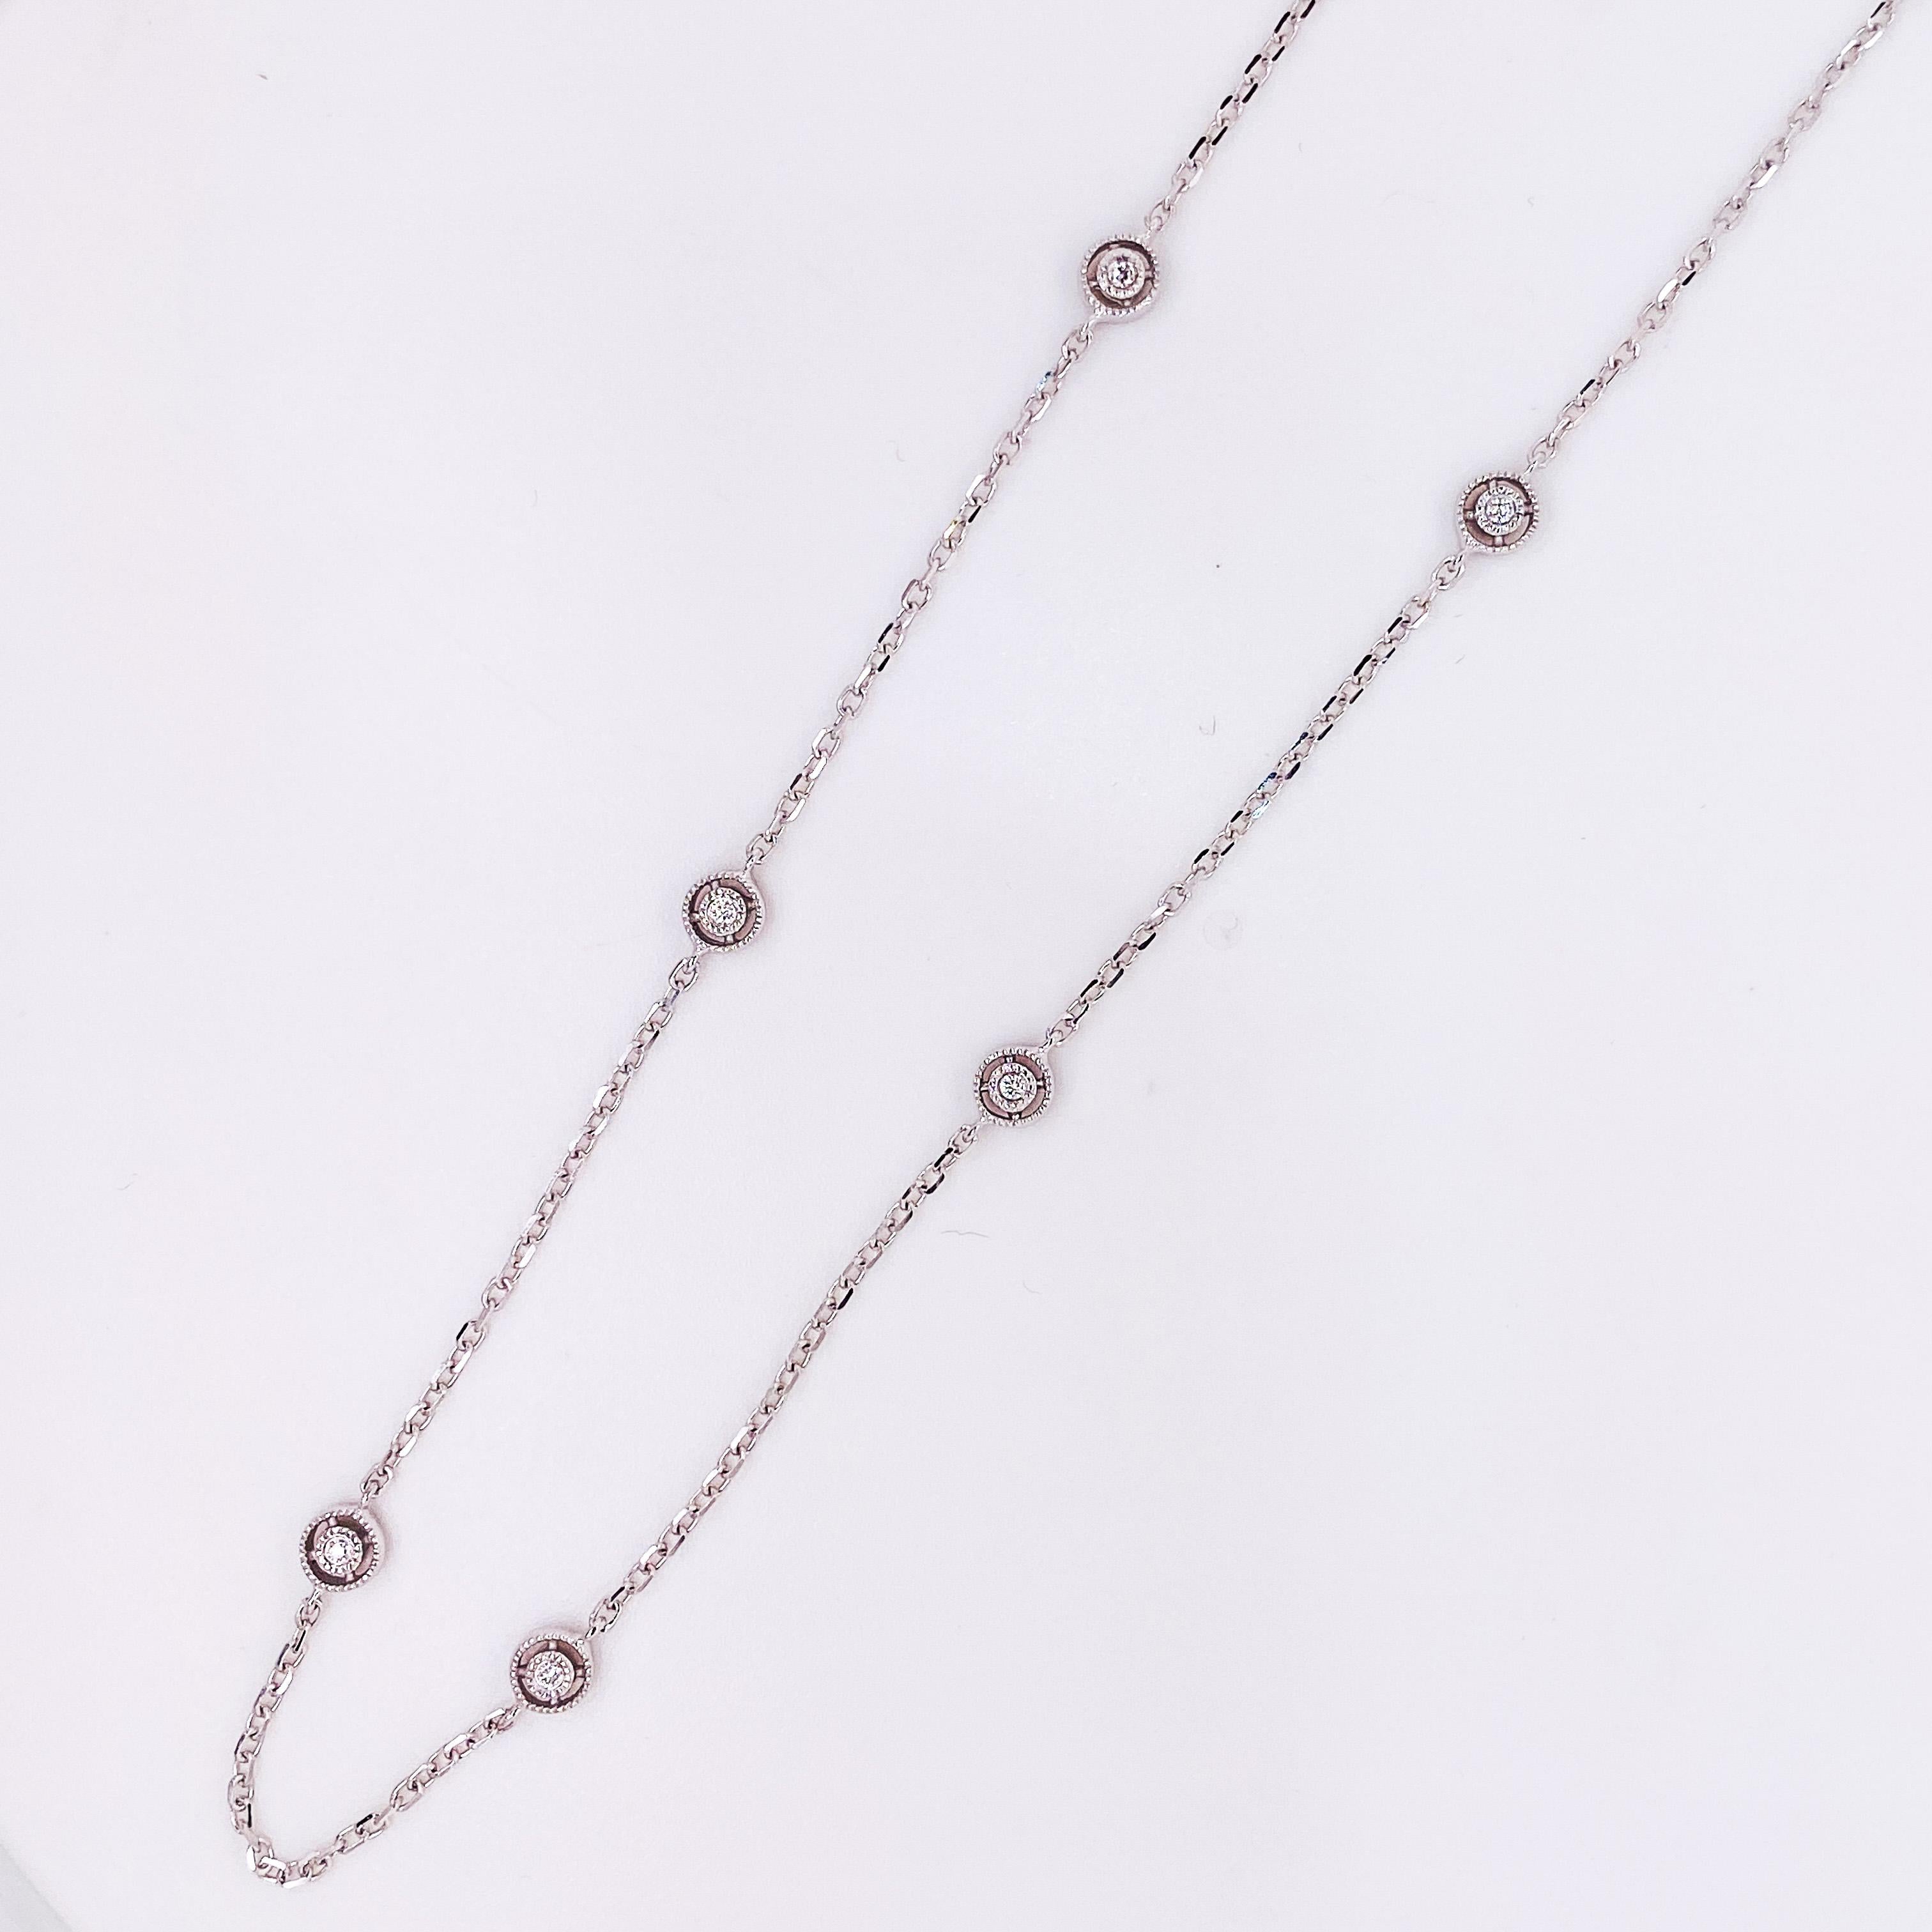 Ce collier de diamants au mètre comporte 10 diamants répartis sur une chaîne en câble. La chaîne de 18 pouces présente un design unique avec un motif satellite autour de chaque diamant. Chaque diamant est entouré d'un motif perlé. L'ensemble du